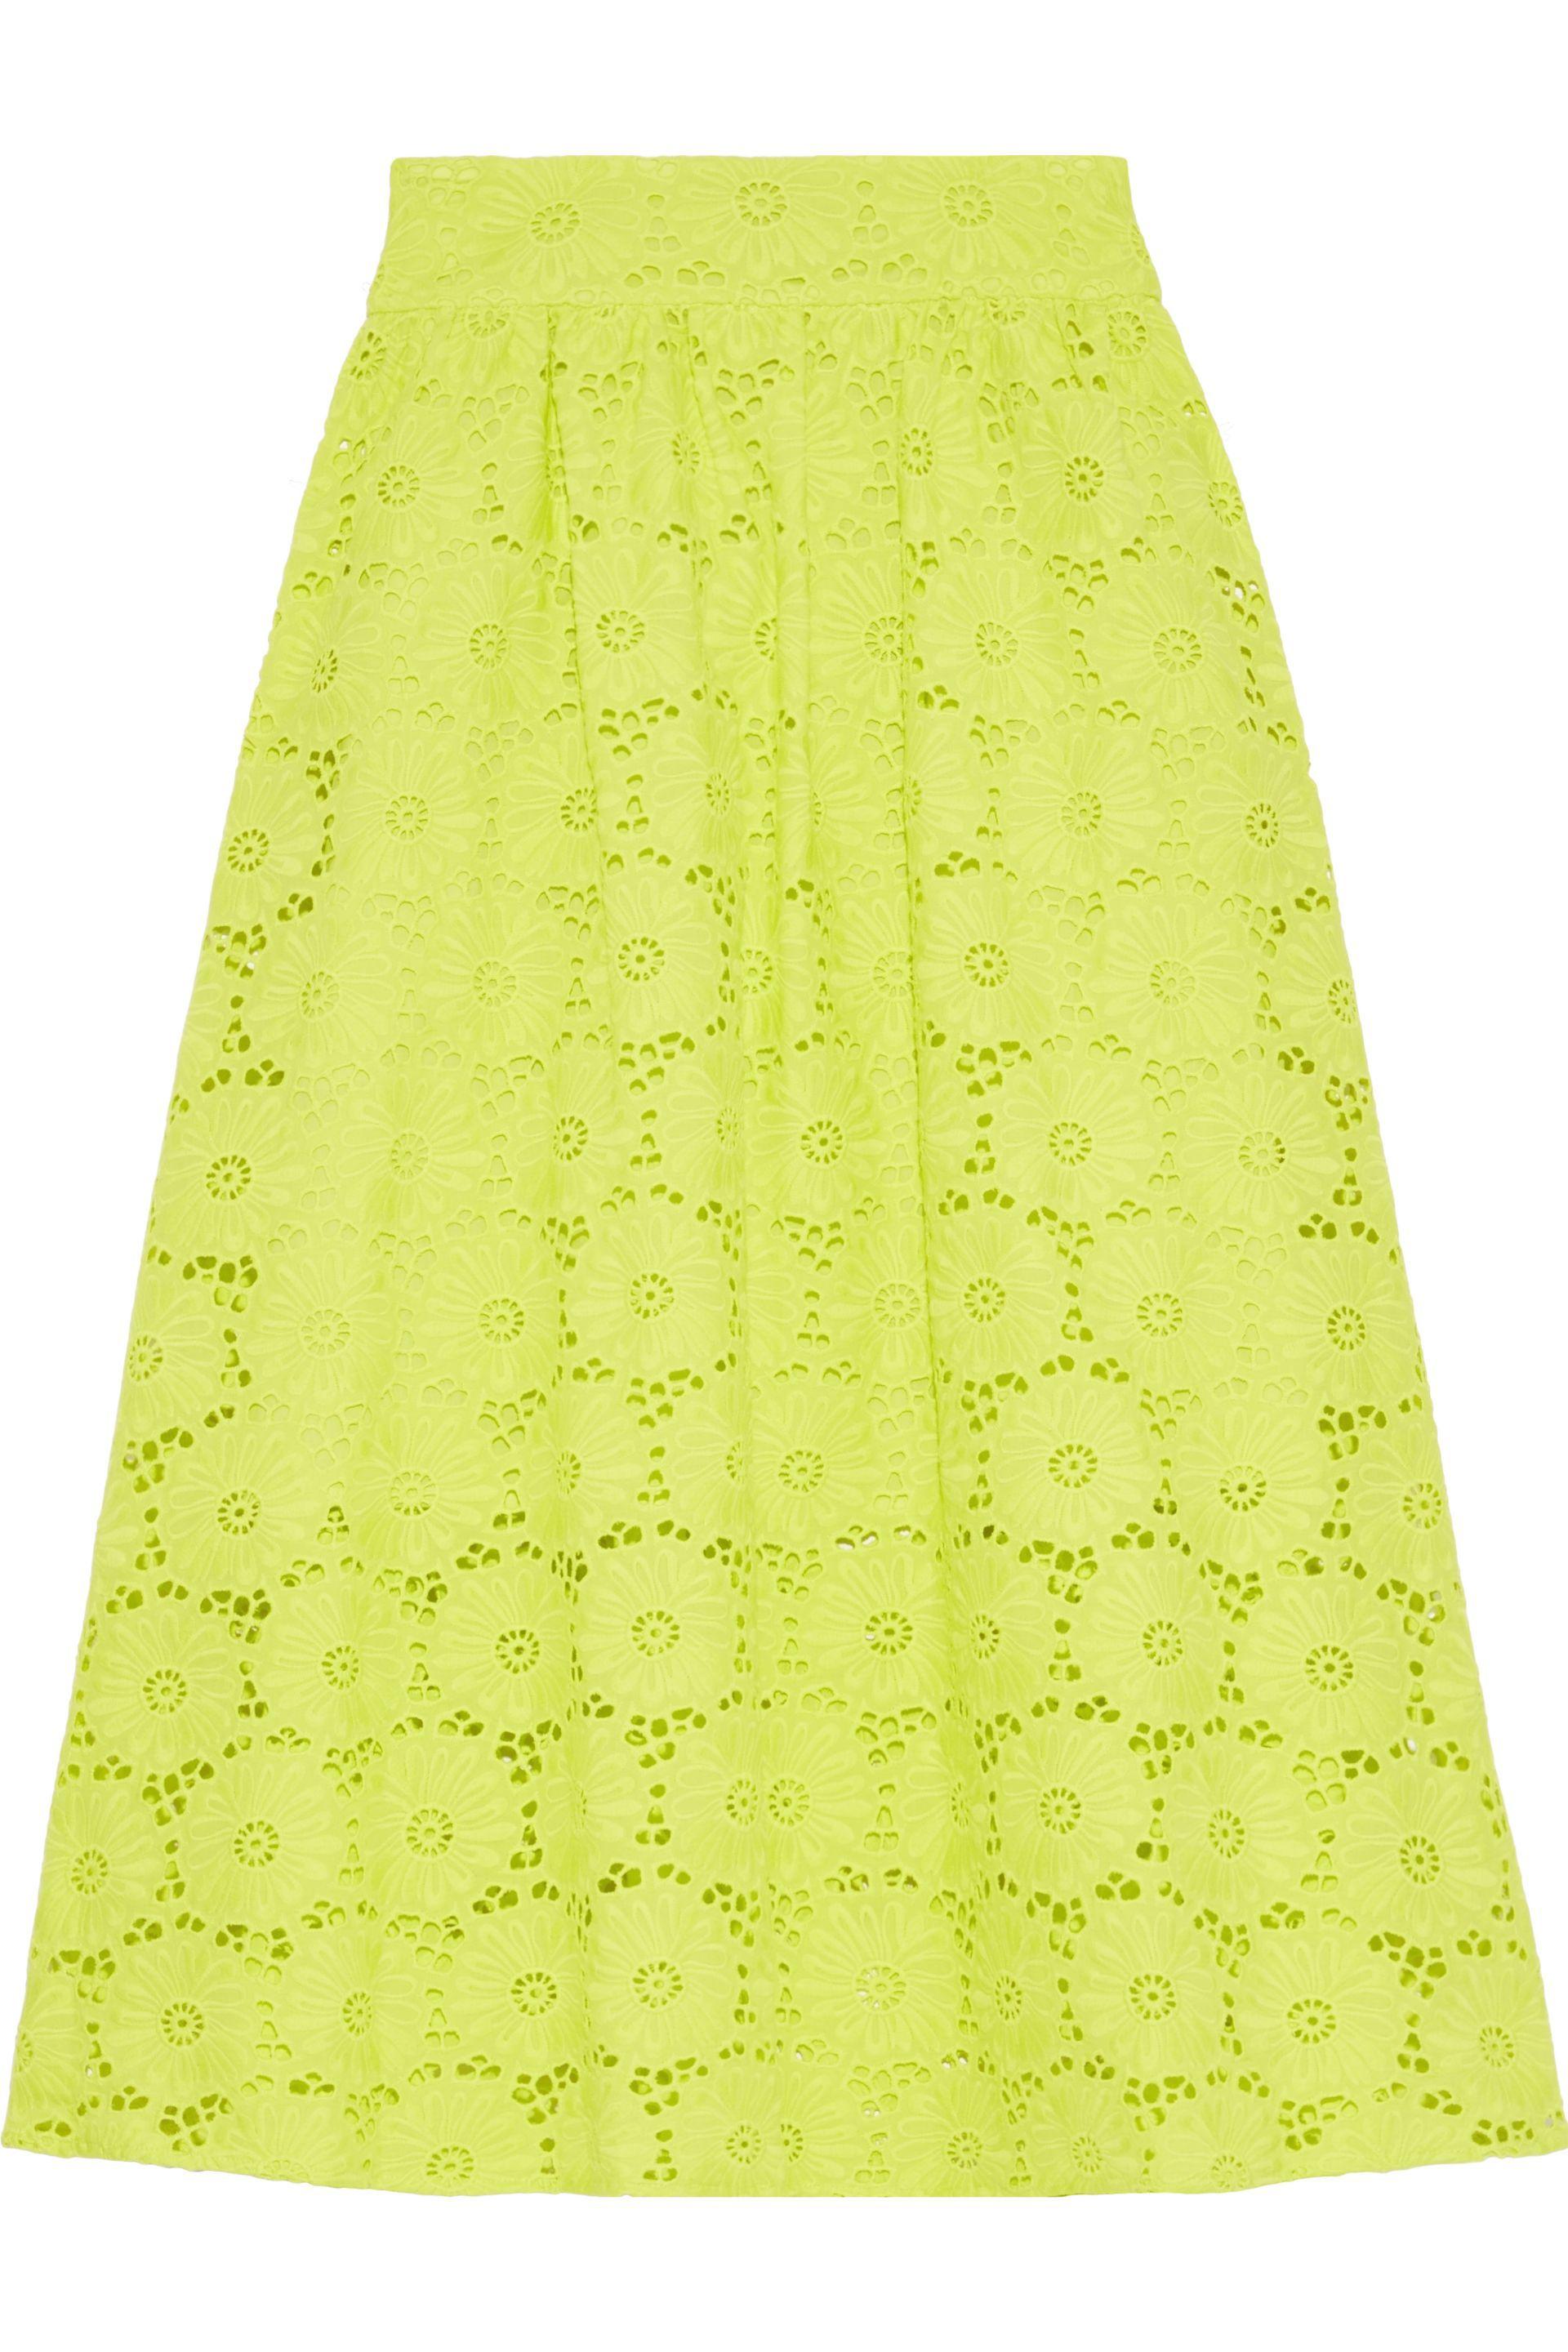 Diane von Furstenberg Tara Neon Broderie Anglaise Cotton Skirt Lime ...